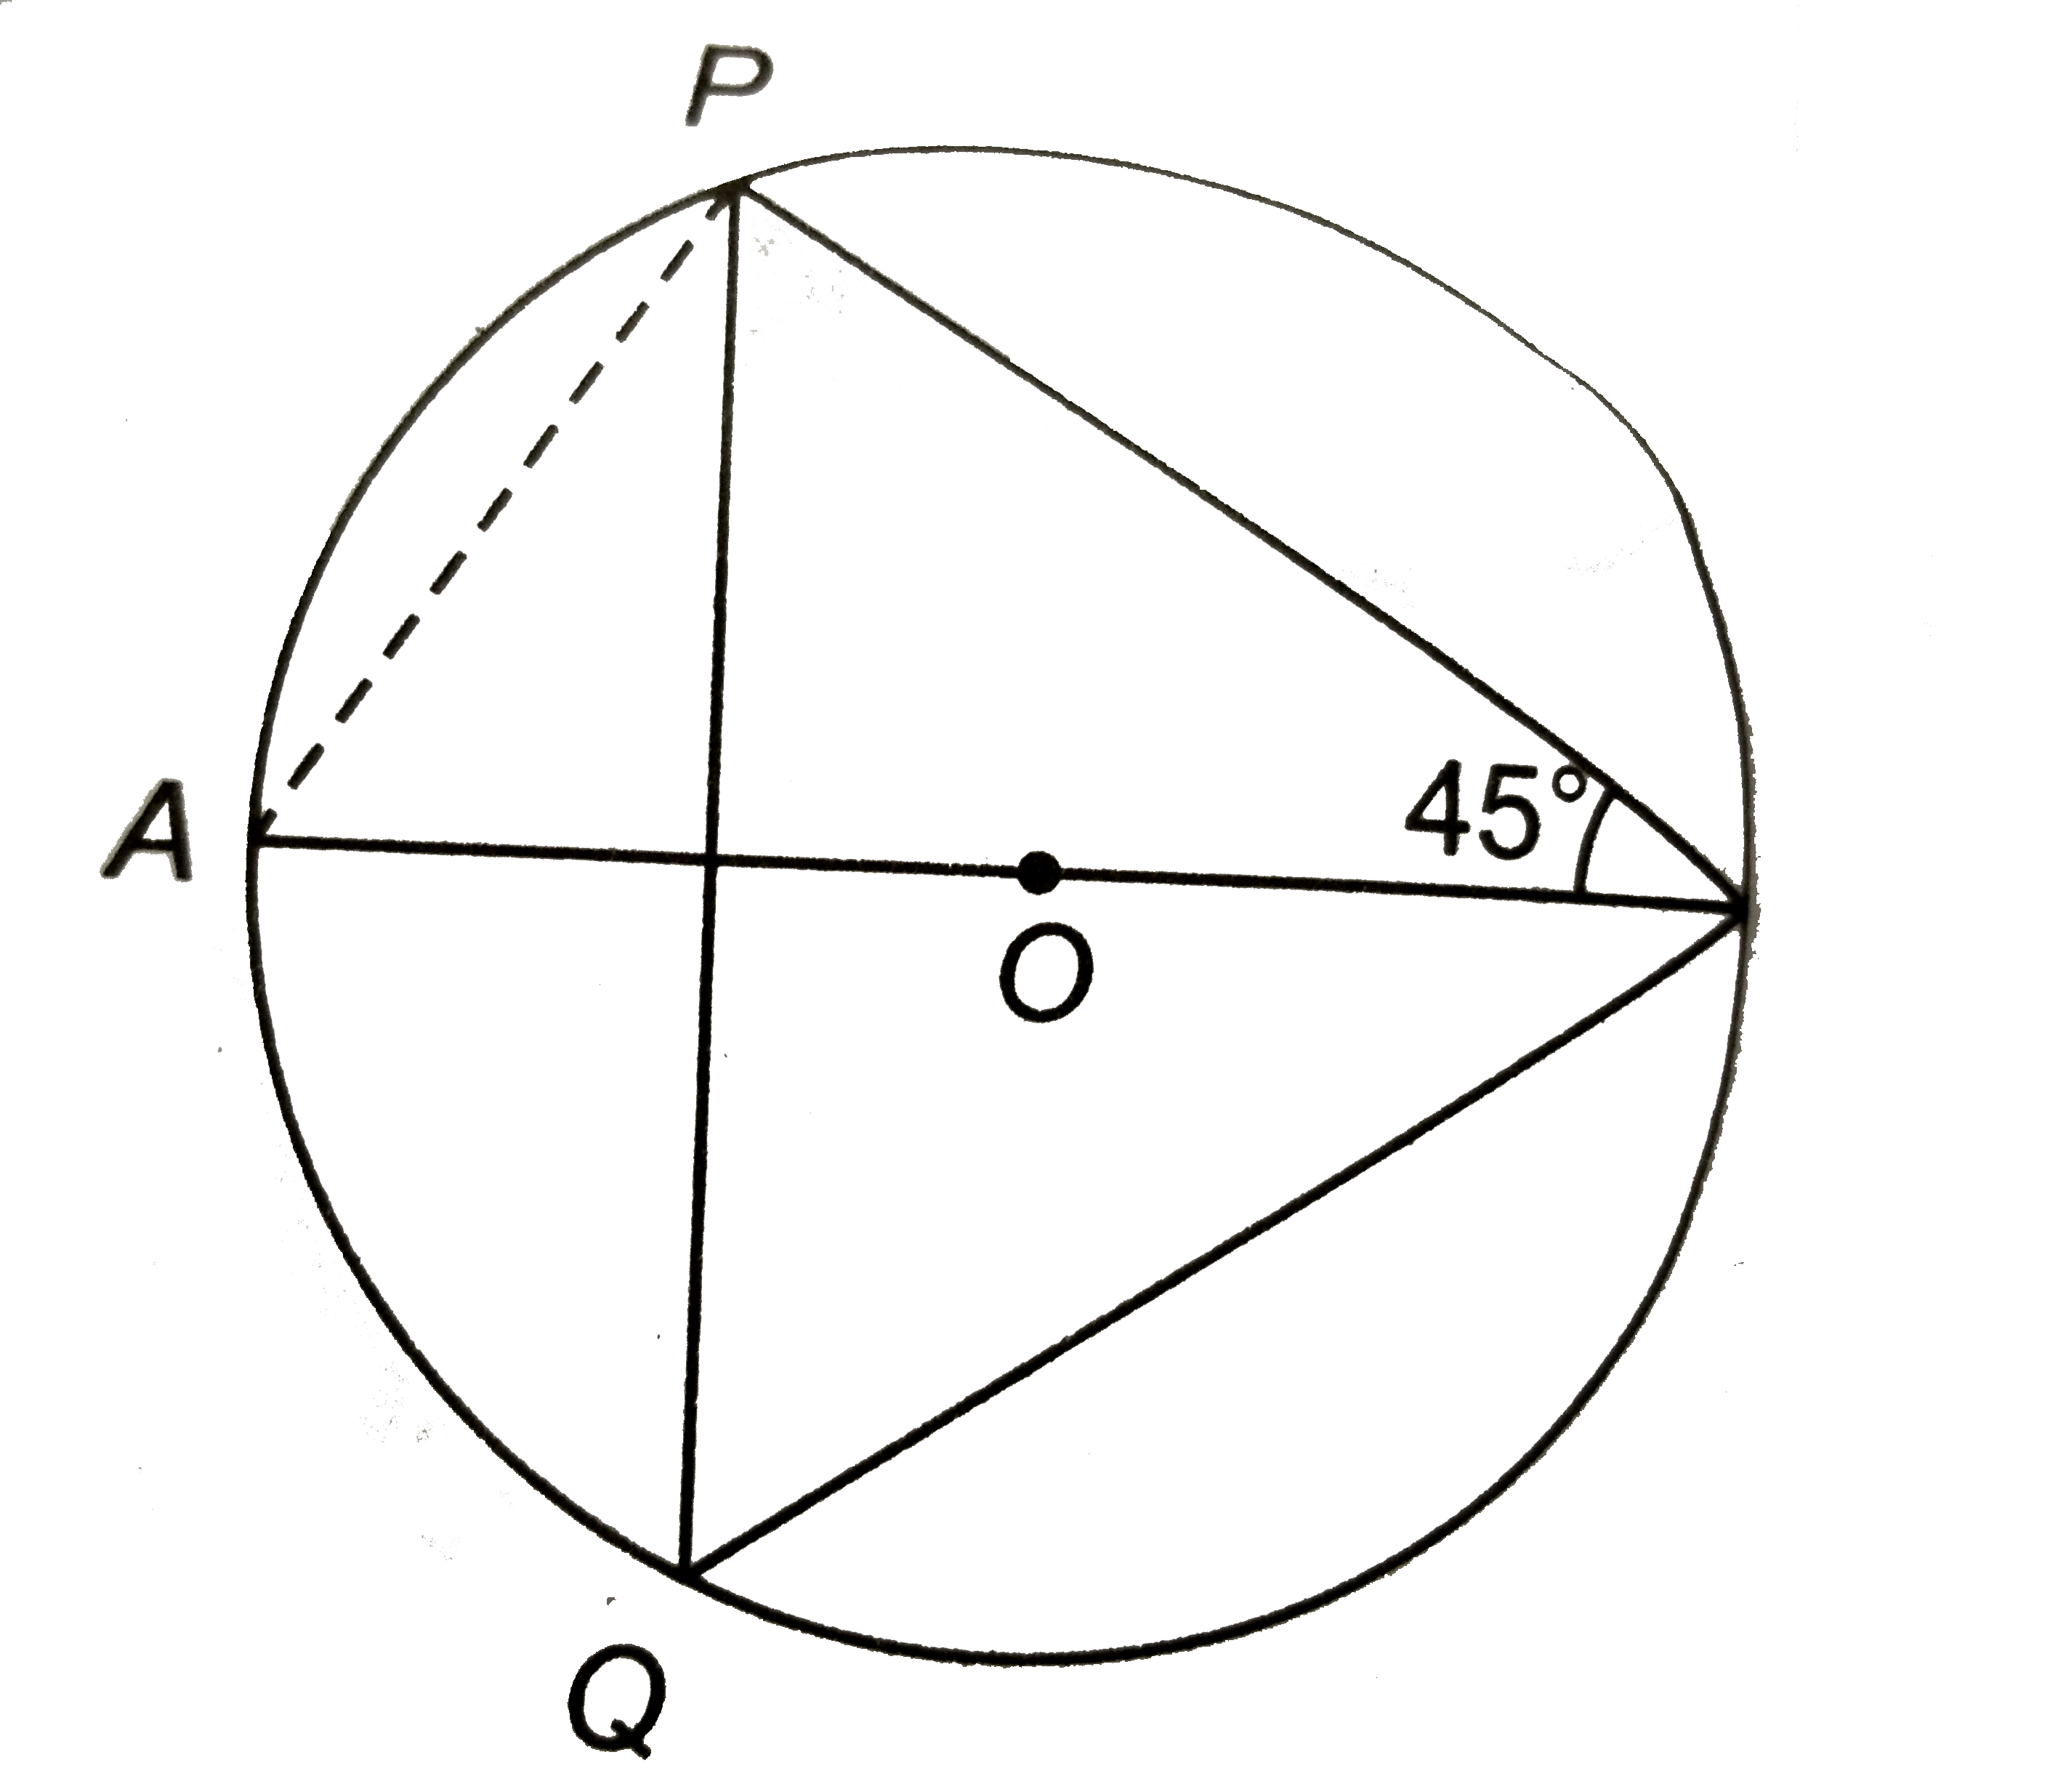 संलग्न चित्र में, AOB वृत्त का व्यास है | यदि angleABP=45^(@), तो anglePQB का मान ज्ञात कीजिए |